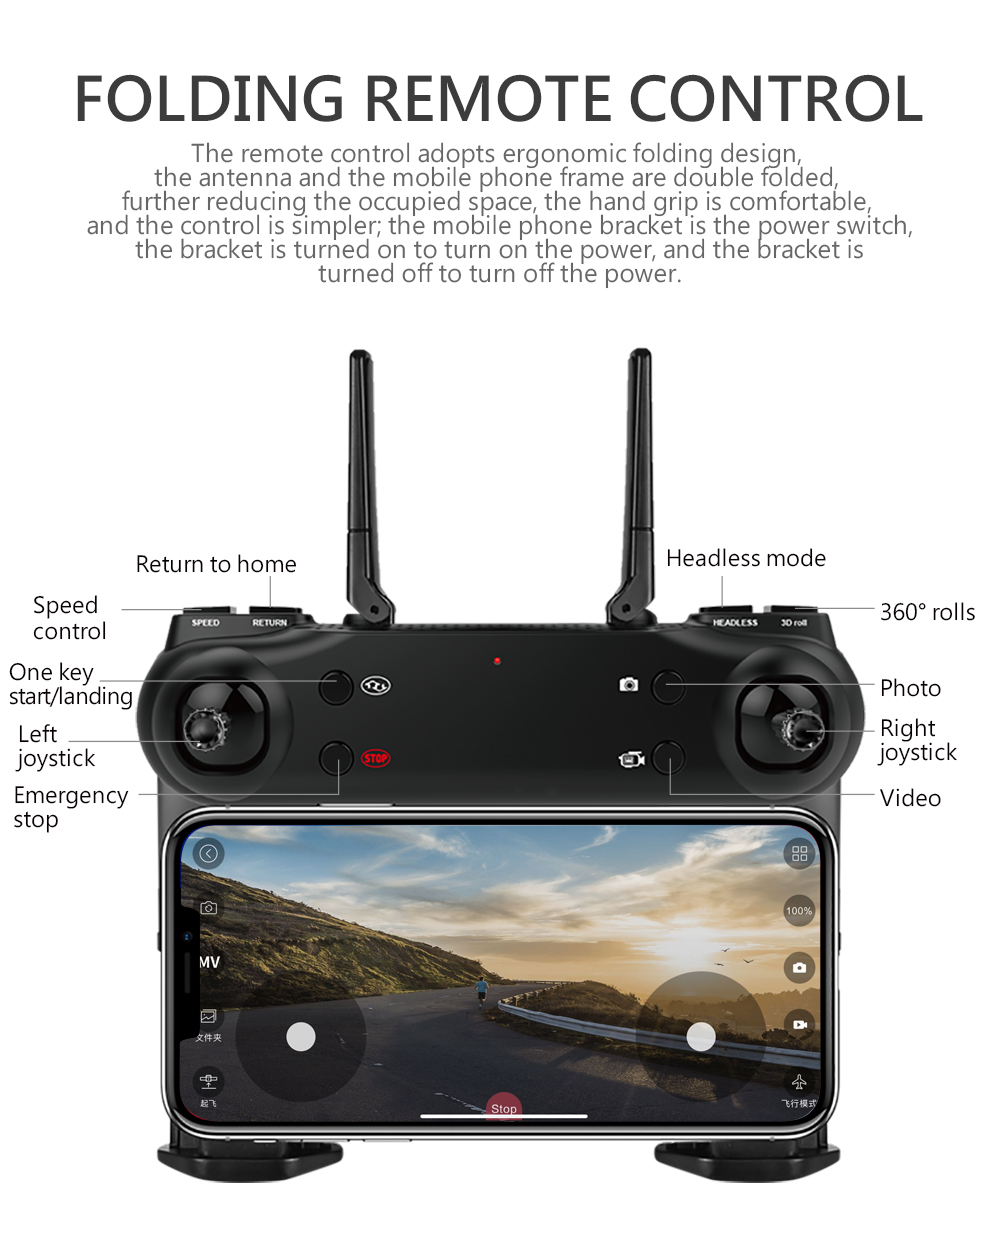 ข้อมูลเกี่ยวกับ โดรนติดกล้อง โดรนบังคับ โดรนถ่ายรูป รักษาระดับความสูง บินกลับบ้านได้เอง กล้อง2ตัว ฟังก์ชั่นถ่ายรูป บันทึกวีดีโอแบบอัตโนมัติ 4K SG106 WiFi FPV RC Drone Camera Optical Flow 1080P HD Dual Camera Real Time Aerial Video Wide Angle Qpter Aircraft